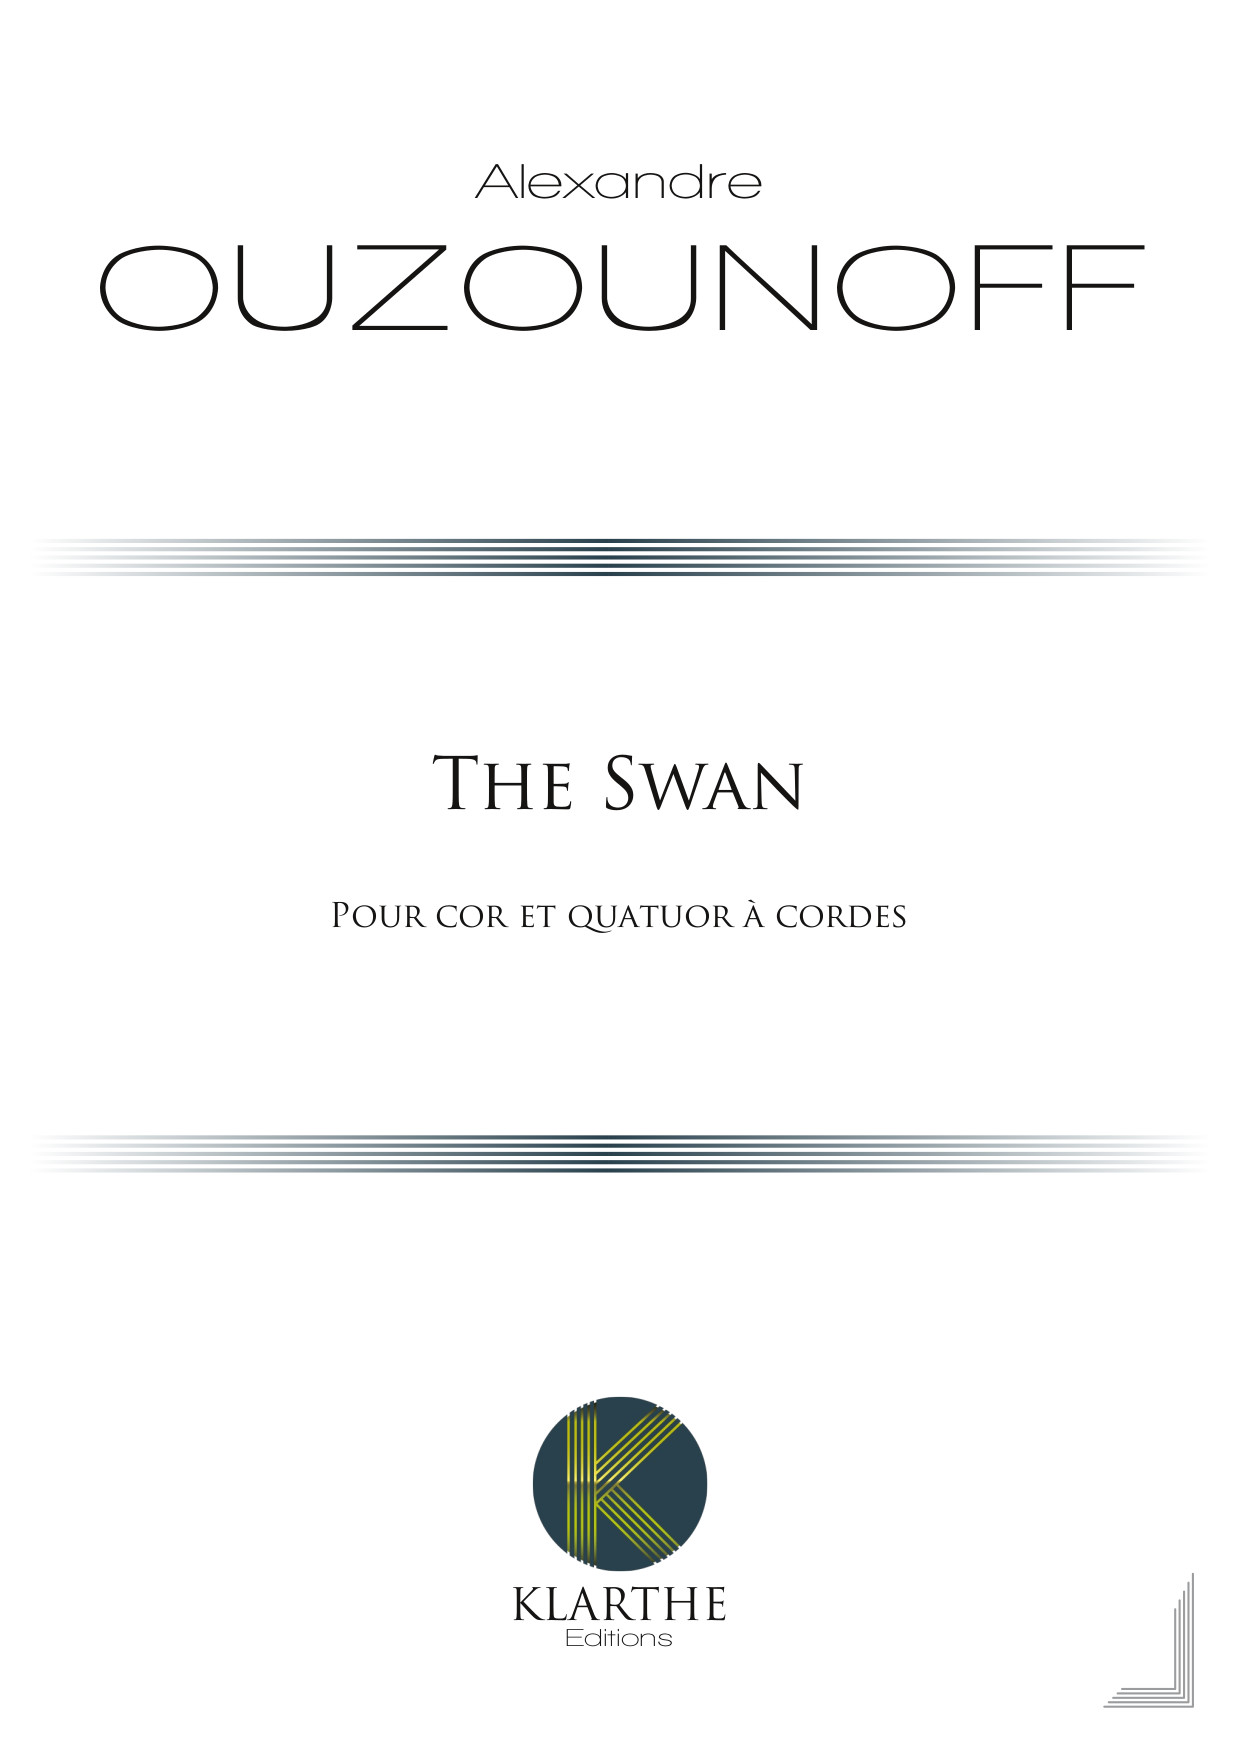 The Swan (OUZOUNOFF ALEXANDRE)